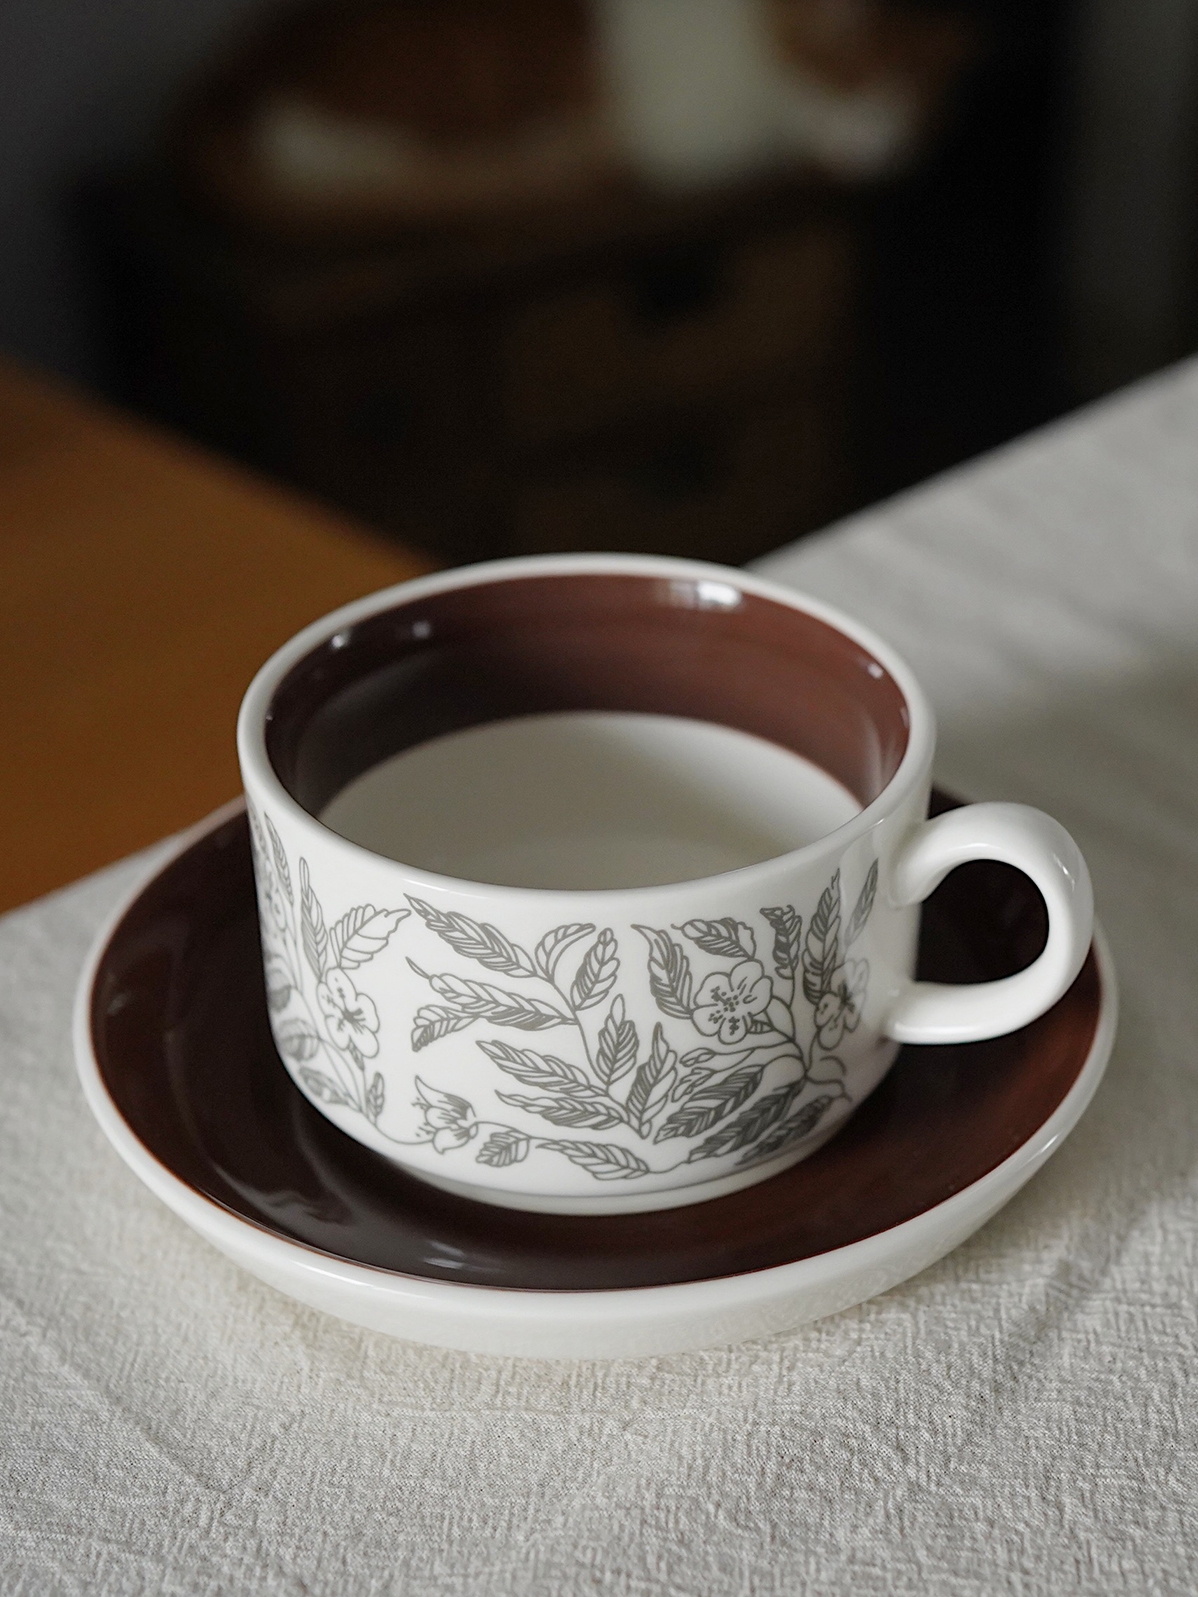 早安好時光 復古棕木槿陶瓷咖啡杯碟組 復刻法式下午茶杯碟 優雅品味生活